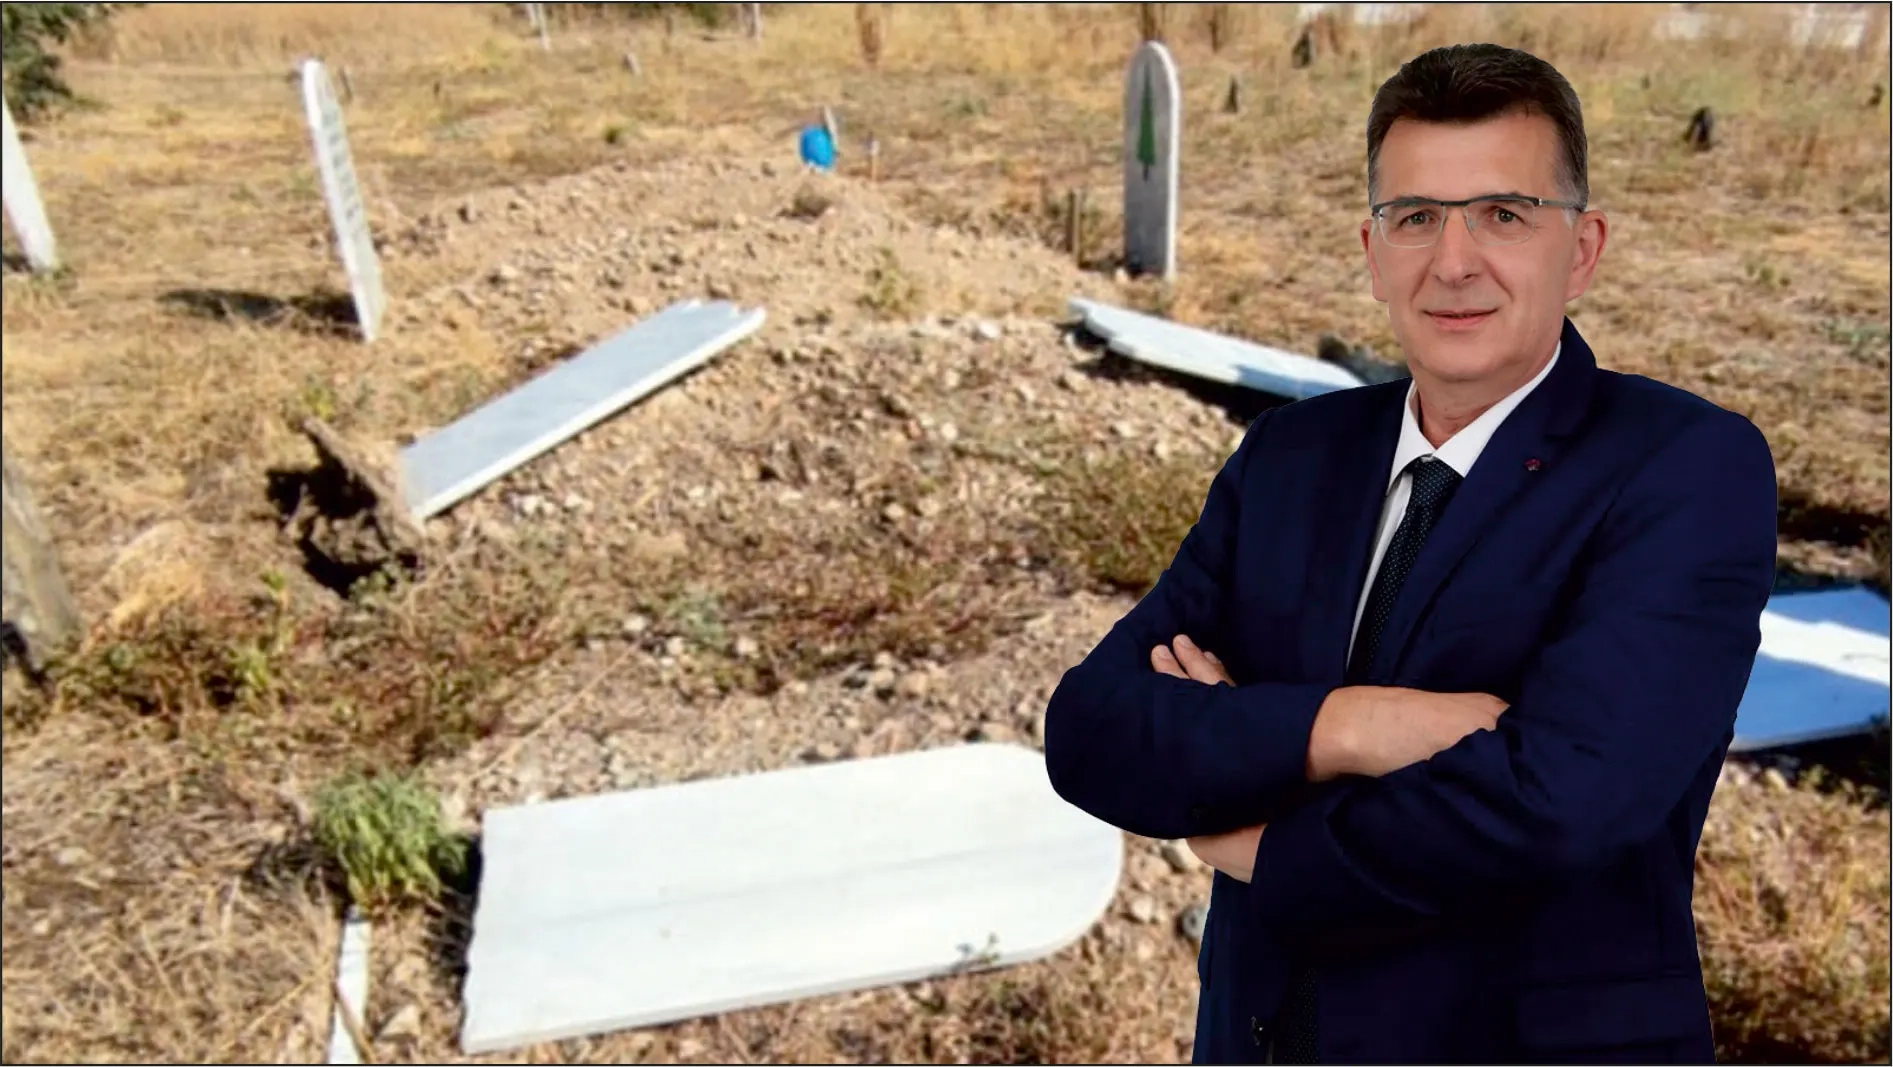 Milletvekili Baran Narlıköy mezarlığına yapılan çirkin saldırıyı kınadı